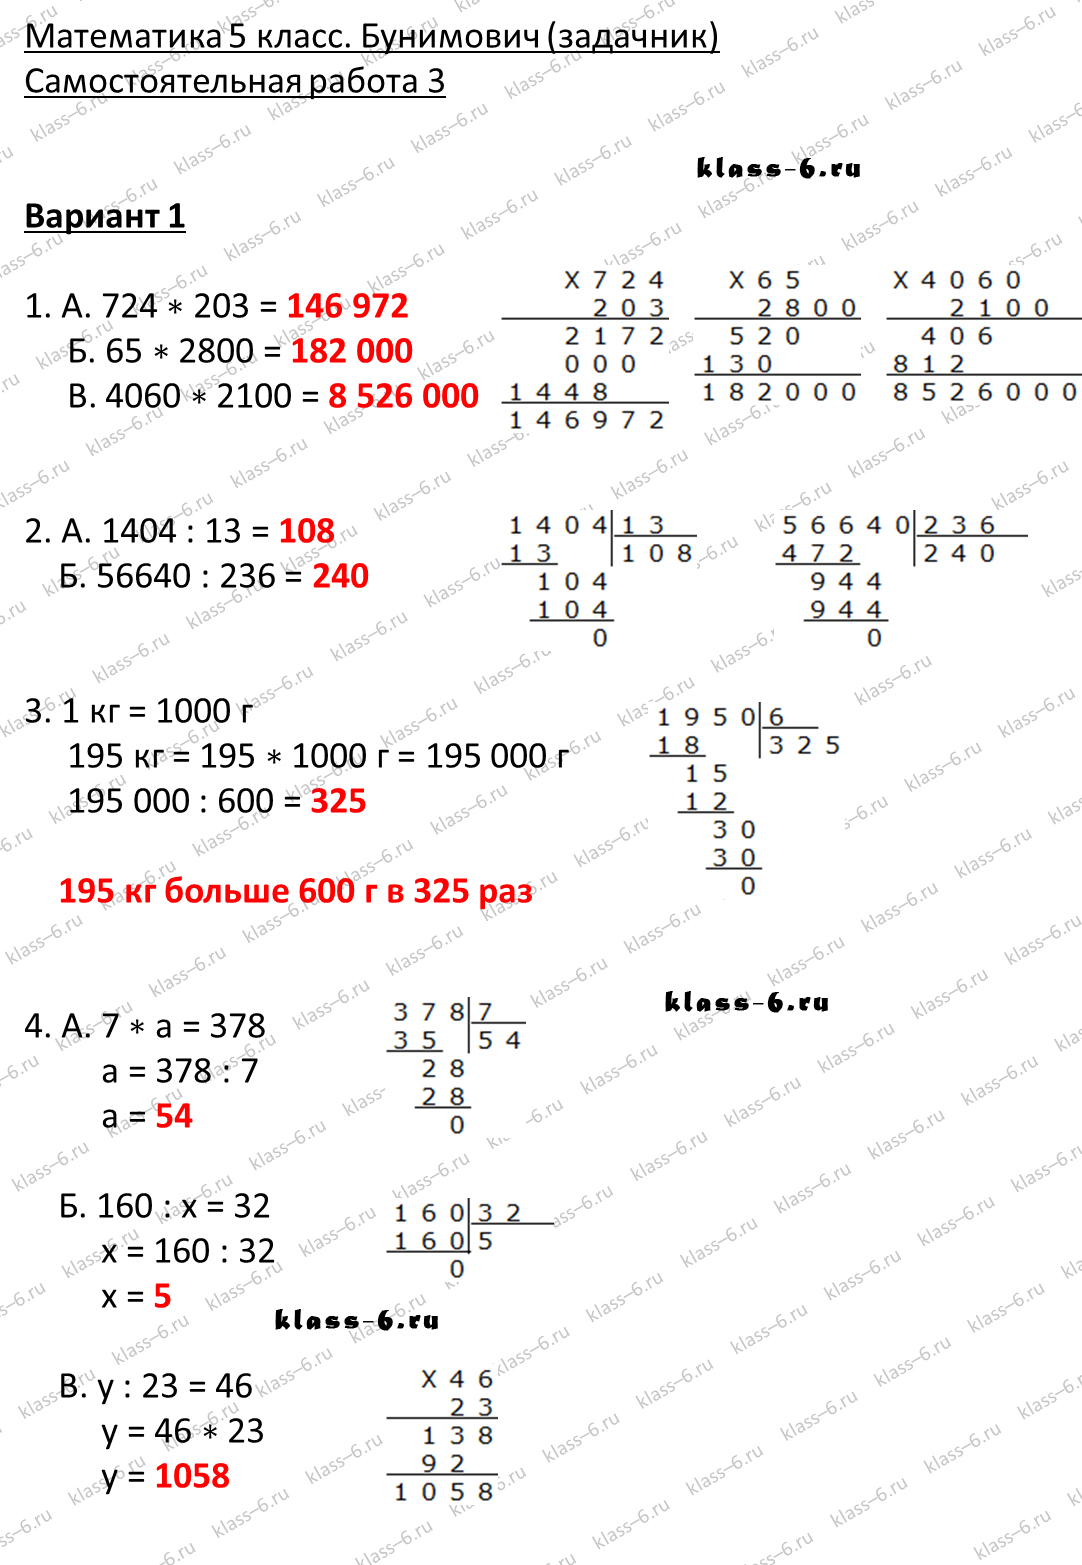 решебник и гдз по математике задачник Бунимович 5 класс самостоятельная работа 3-v1